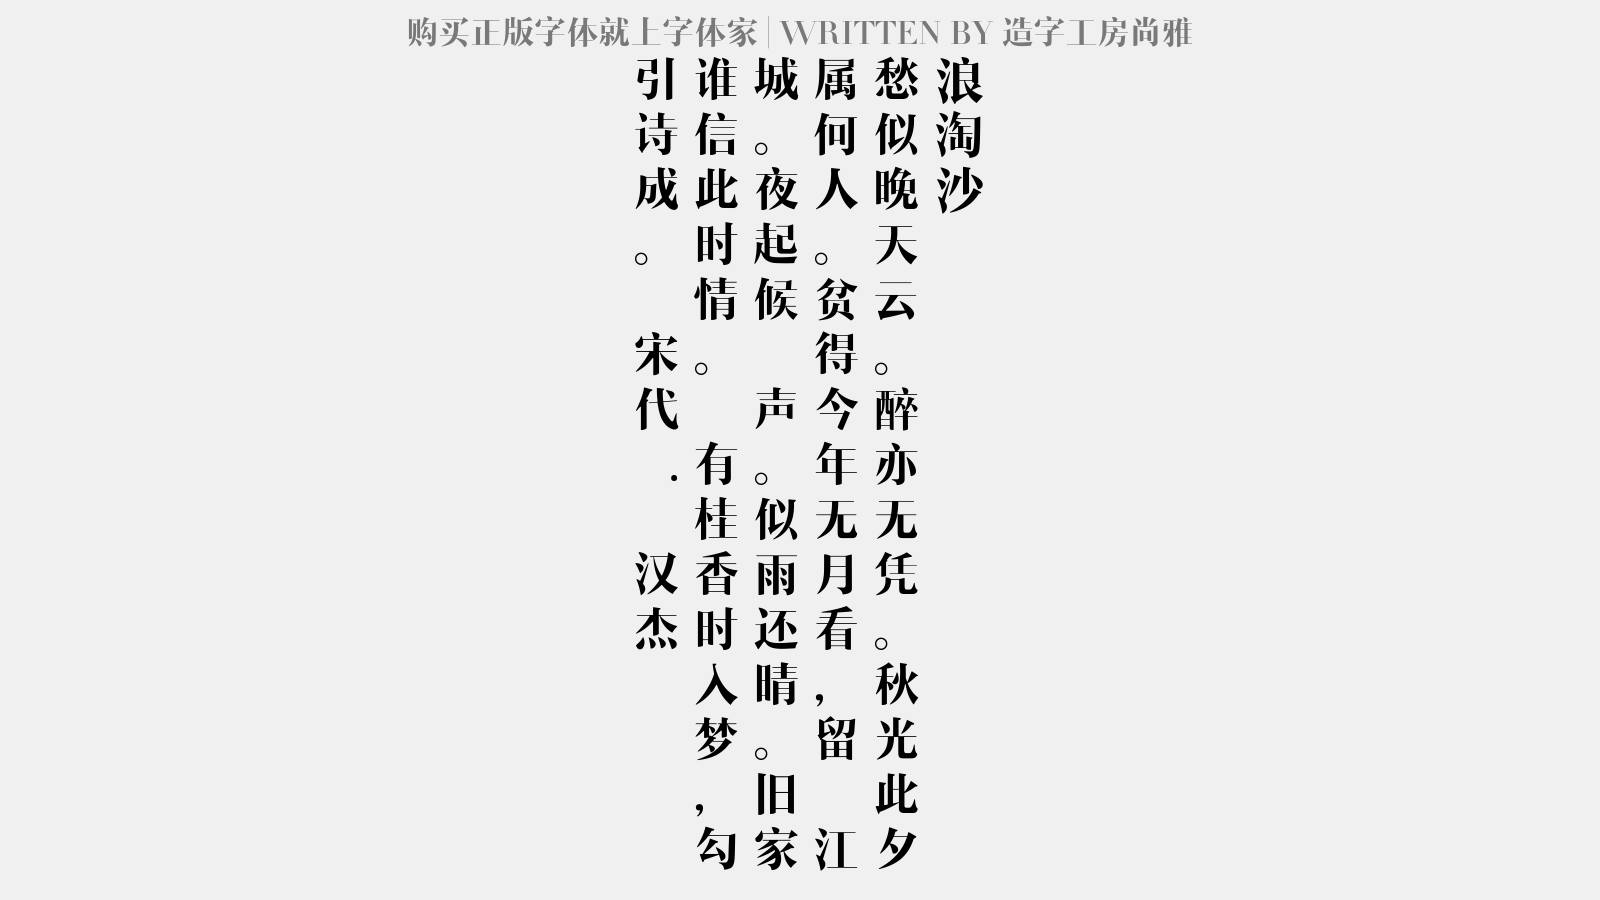 造字工坊尚雅免费字体下载 中文字体免费下载尽在字体家